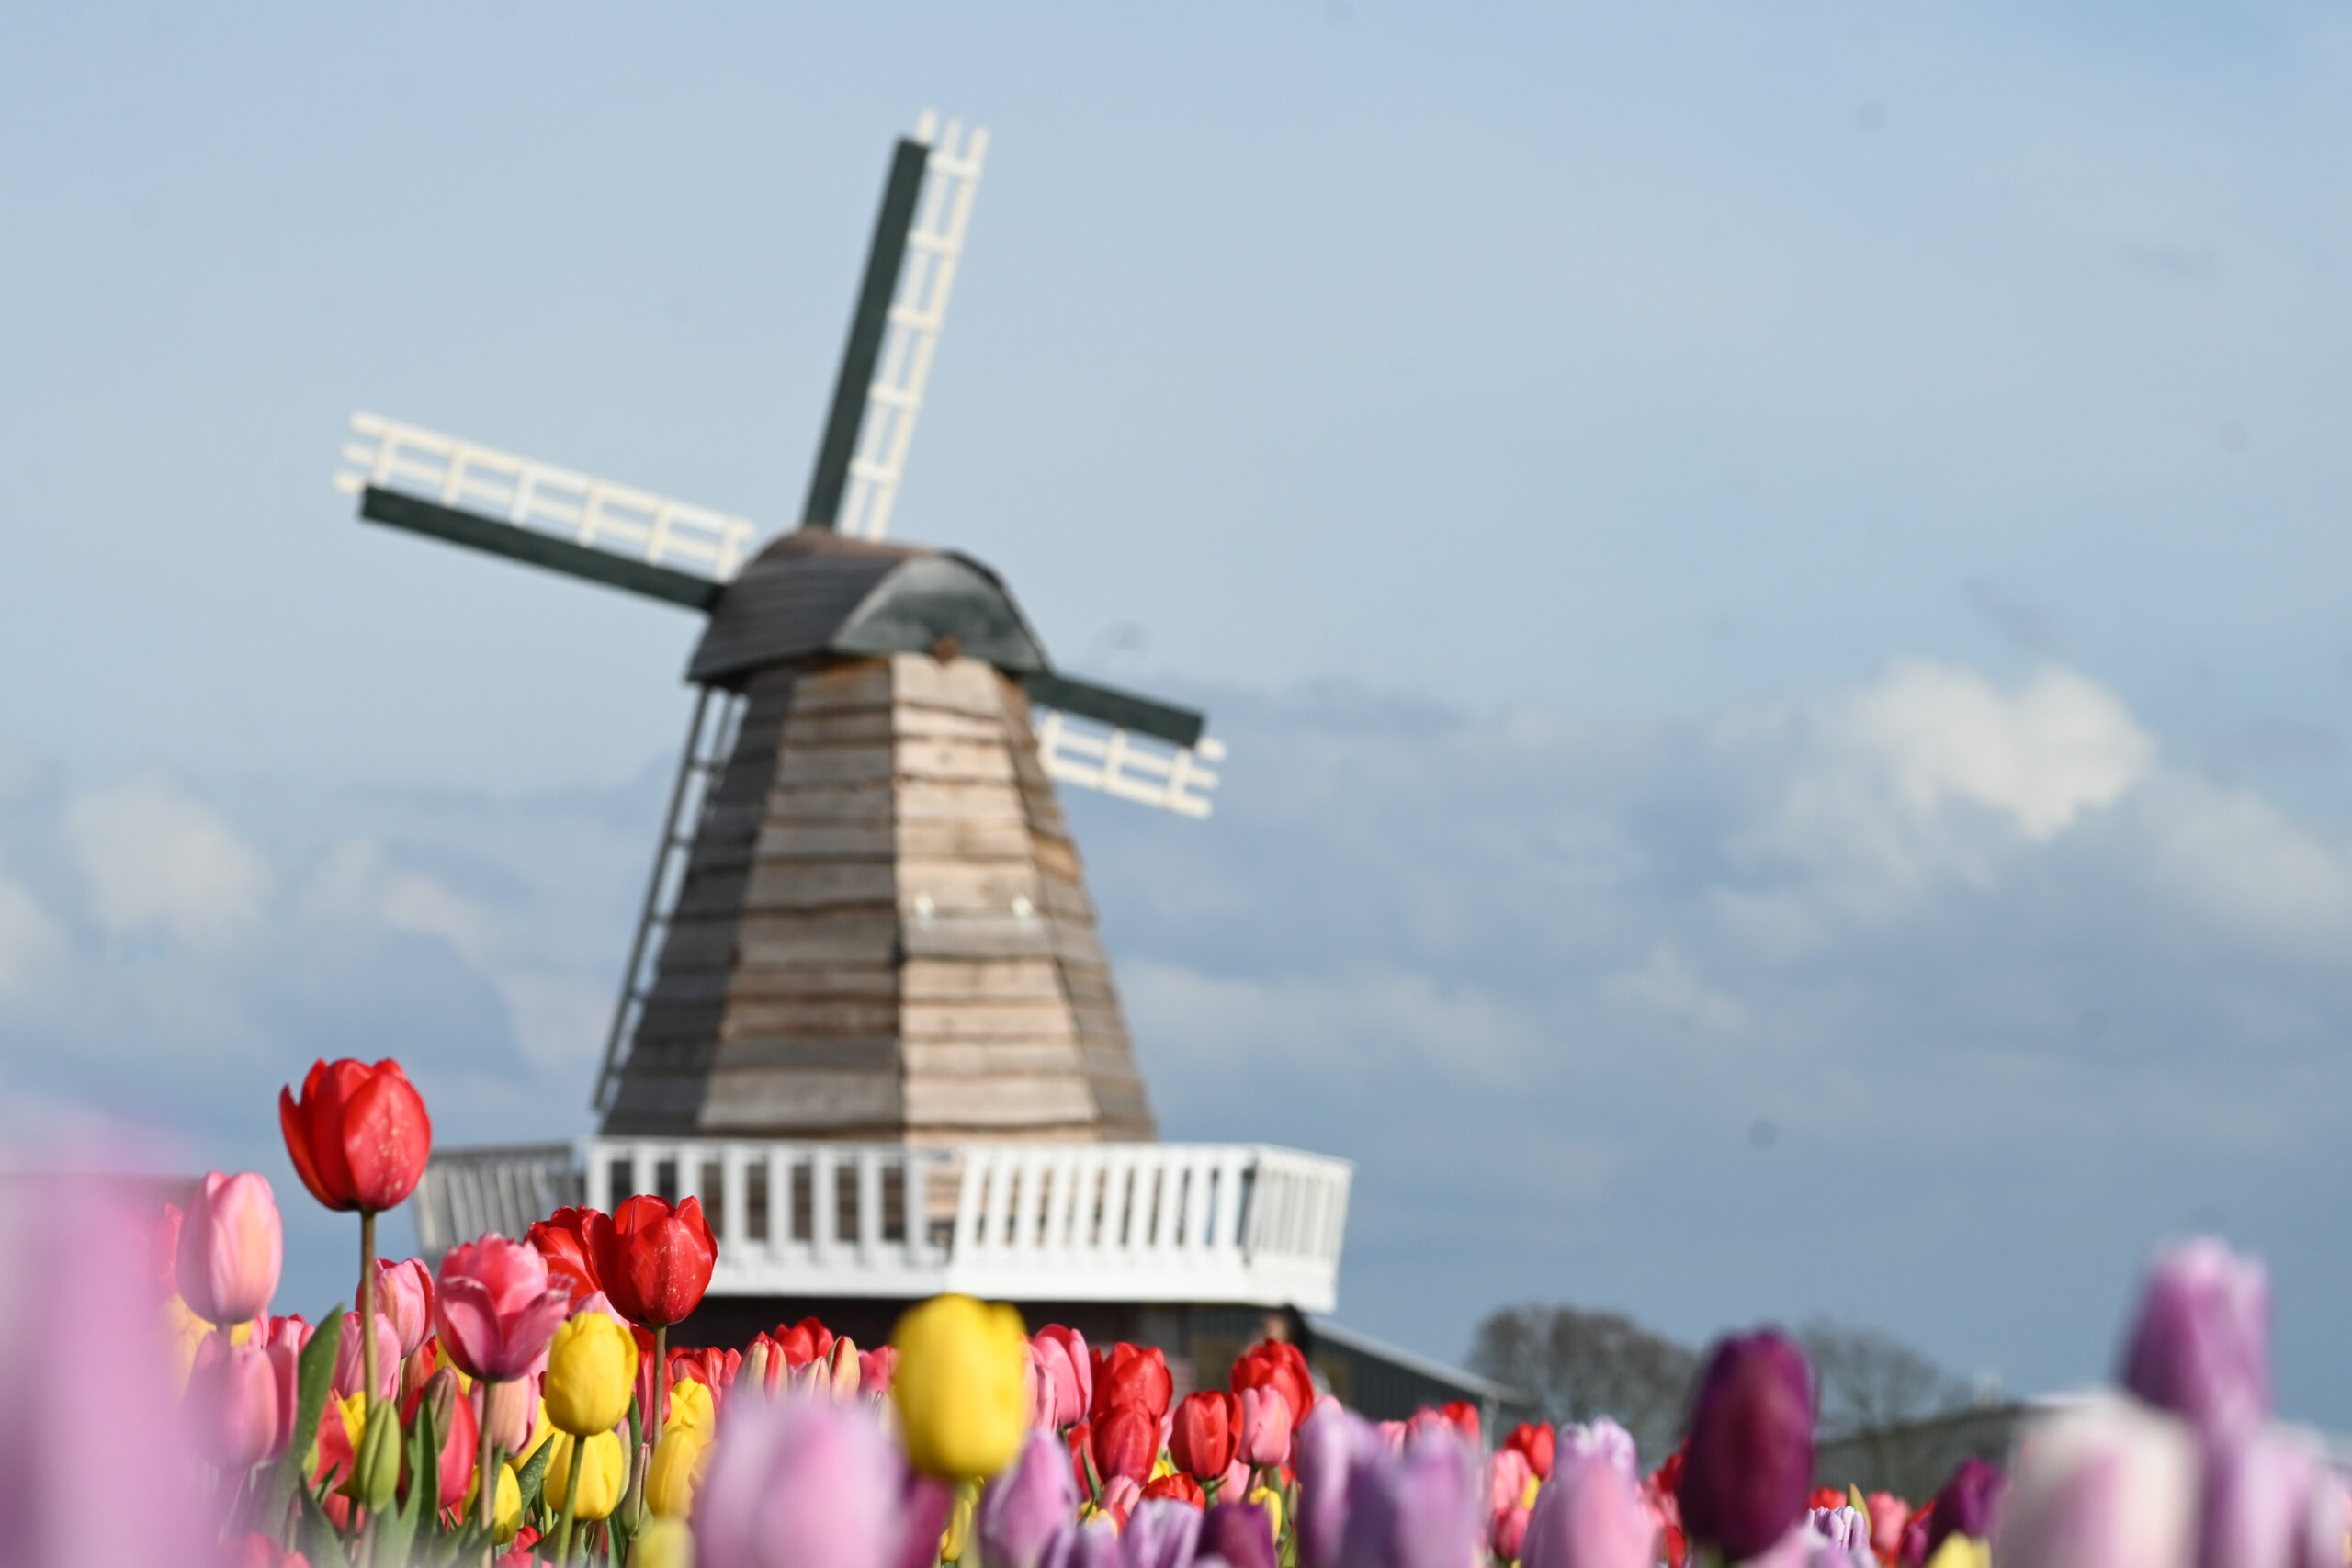 Lees onze nieuwste blog over de lente en de bloembollenvelden in Nederland